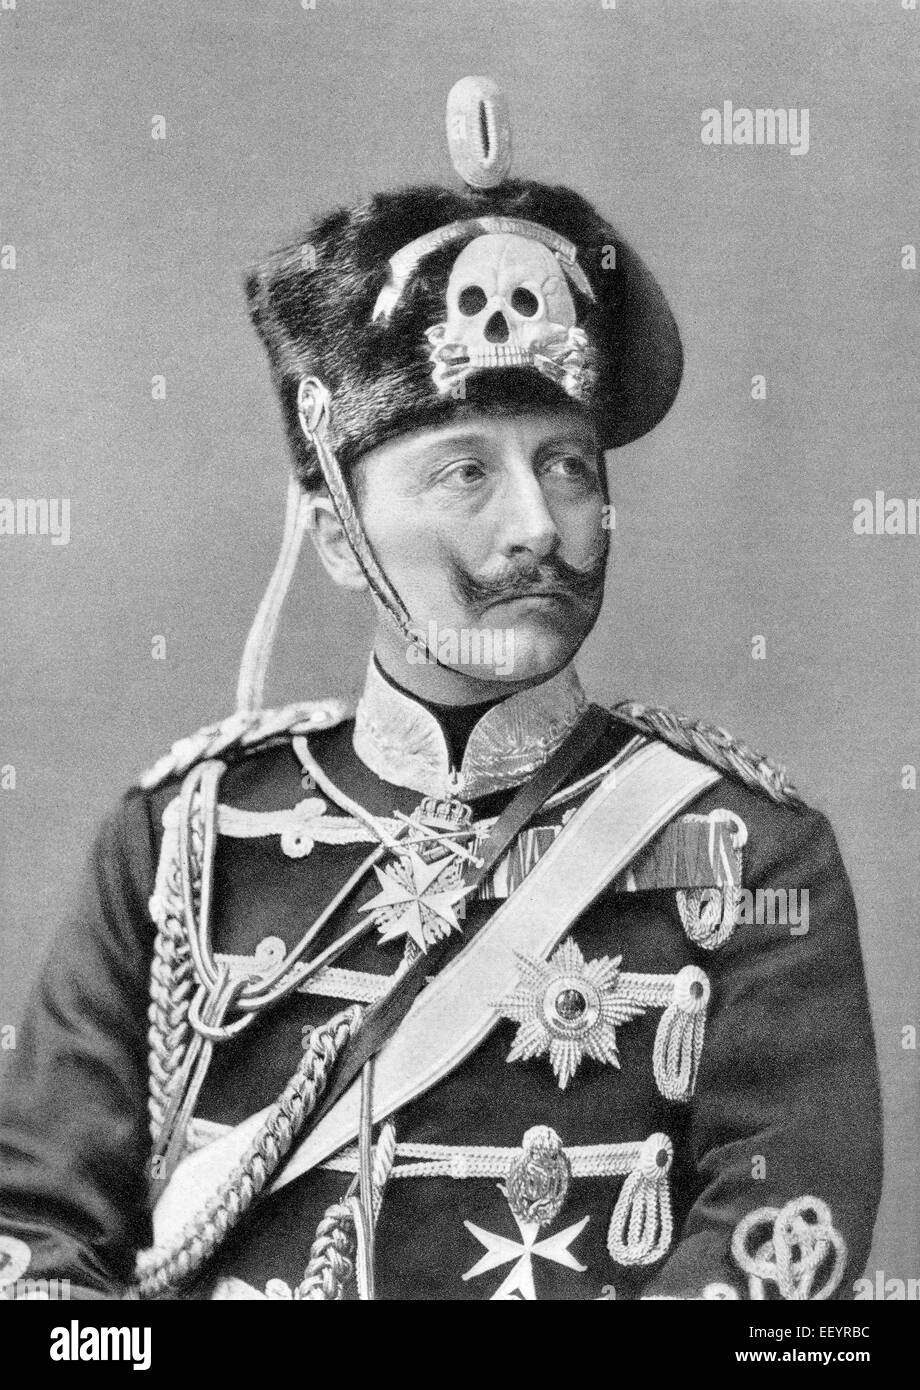 Guglielmo II di Prussia, 1859 - 1941 come comandante Regimental indossando l'ussaro vestito completo uniforme, Imperatore Tedesco Foto Stock